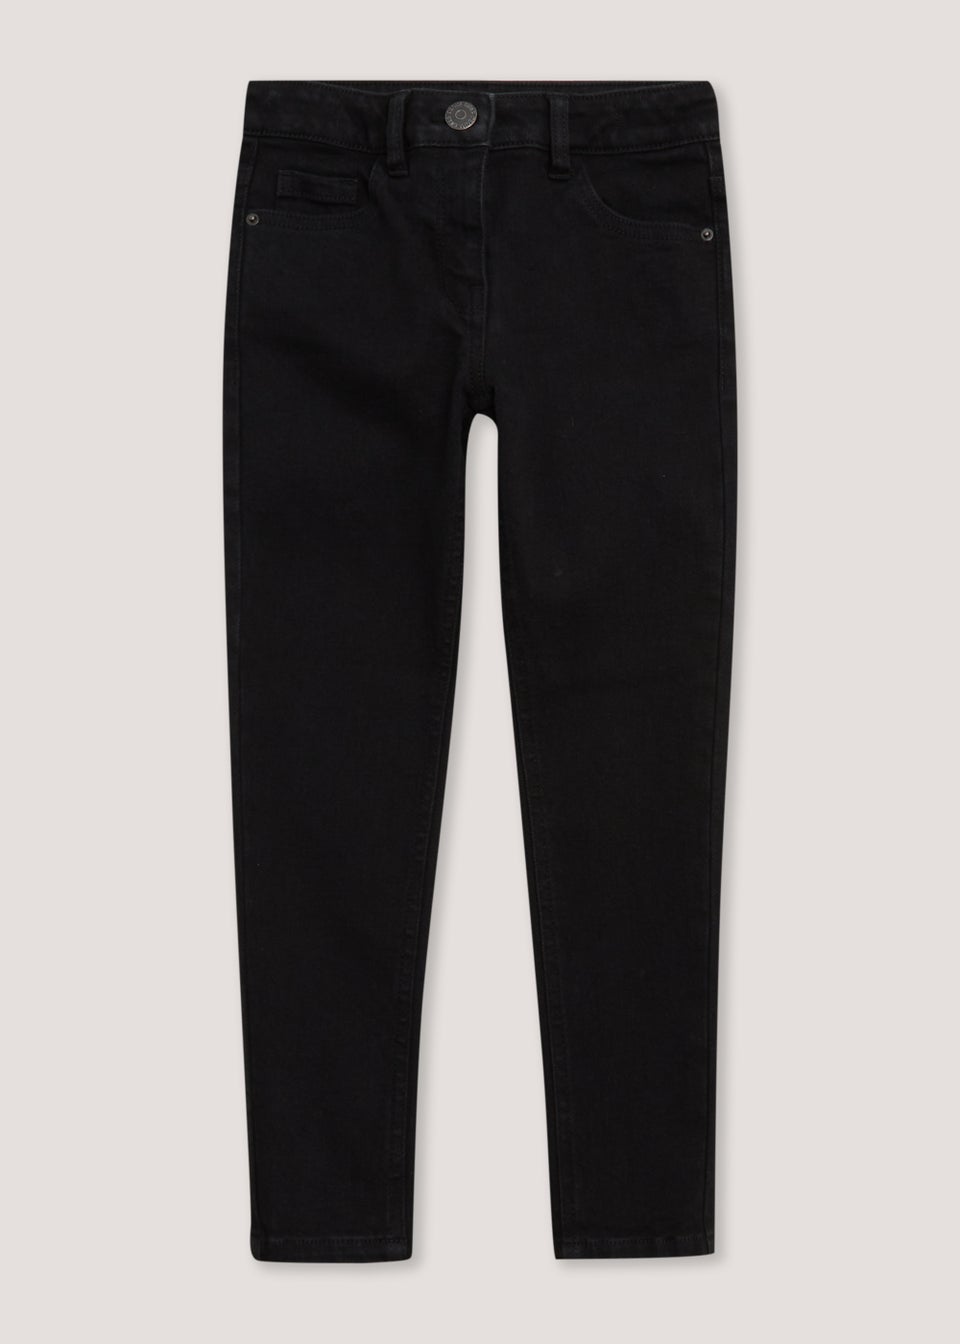 Черные джинсы скинни для девочек (4–15 лет) джинсы reserved модные на 14 15 лет